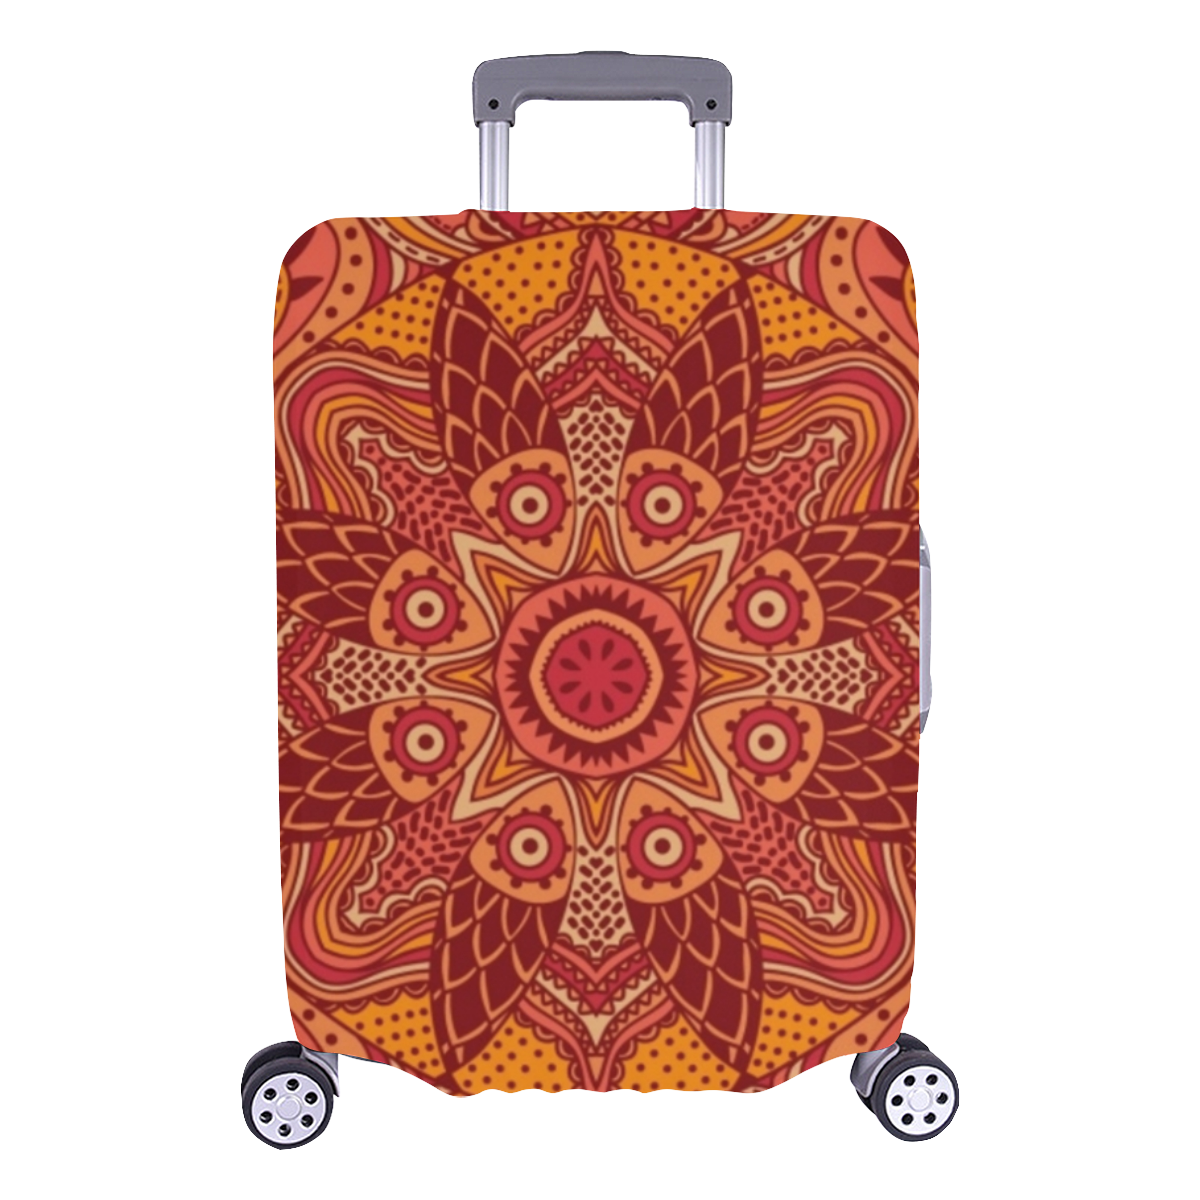 MANDALA SPICE OF LIFE Luggage Cover/Large 26"-28"